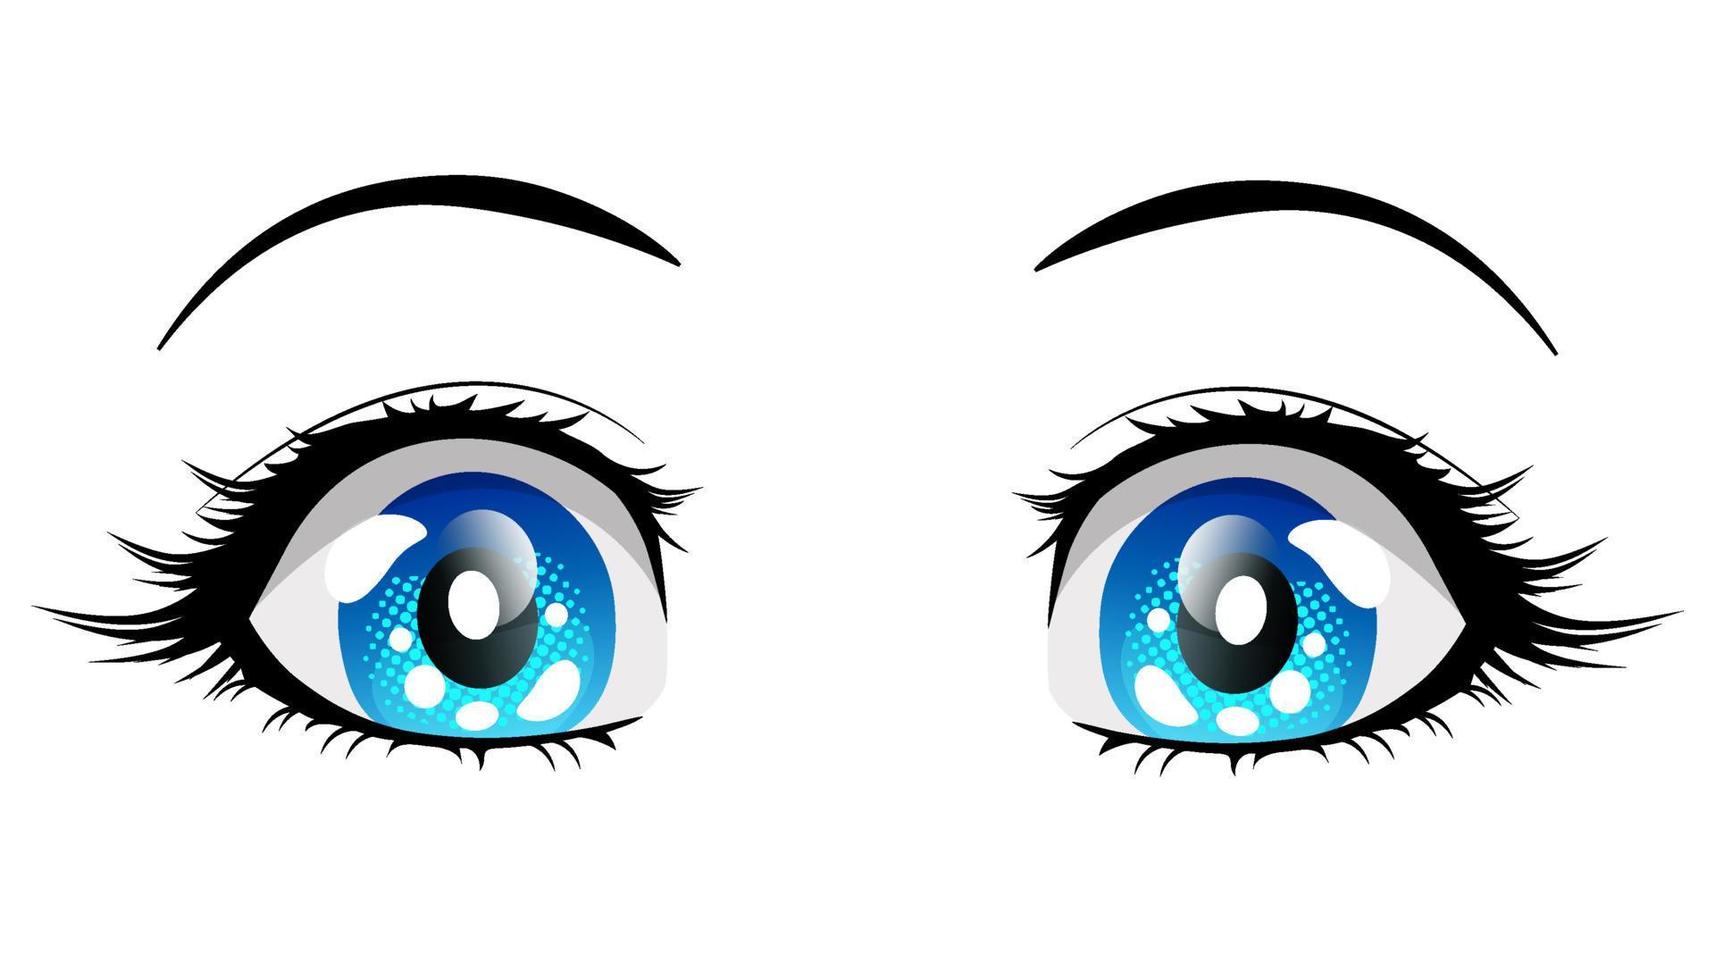 verraste blauwe ogen anime meisje. vectorillustratie in mangastijl geïsoleerd op een witte achtergrond. vector